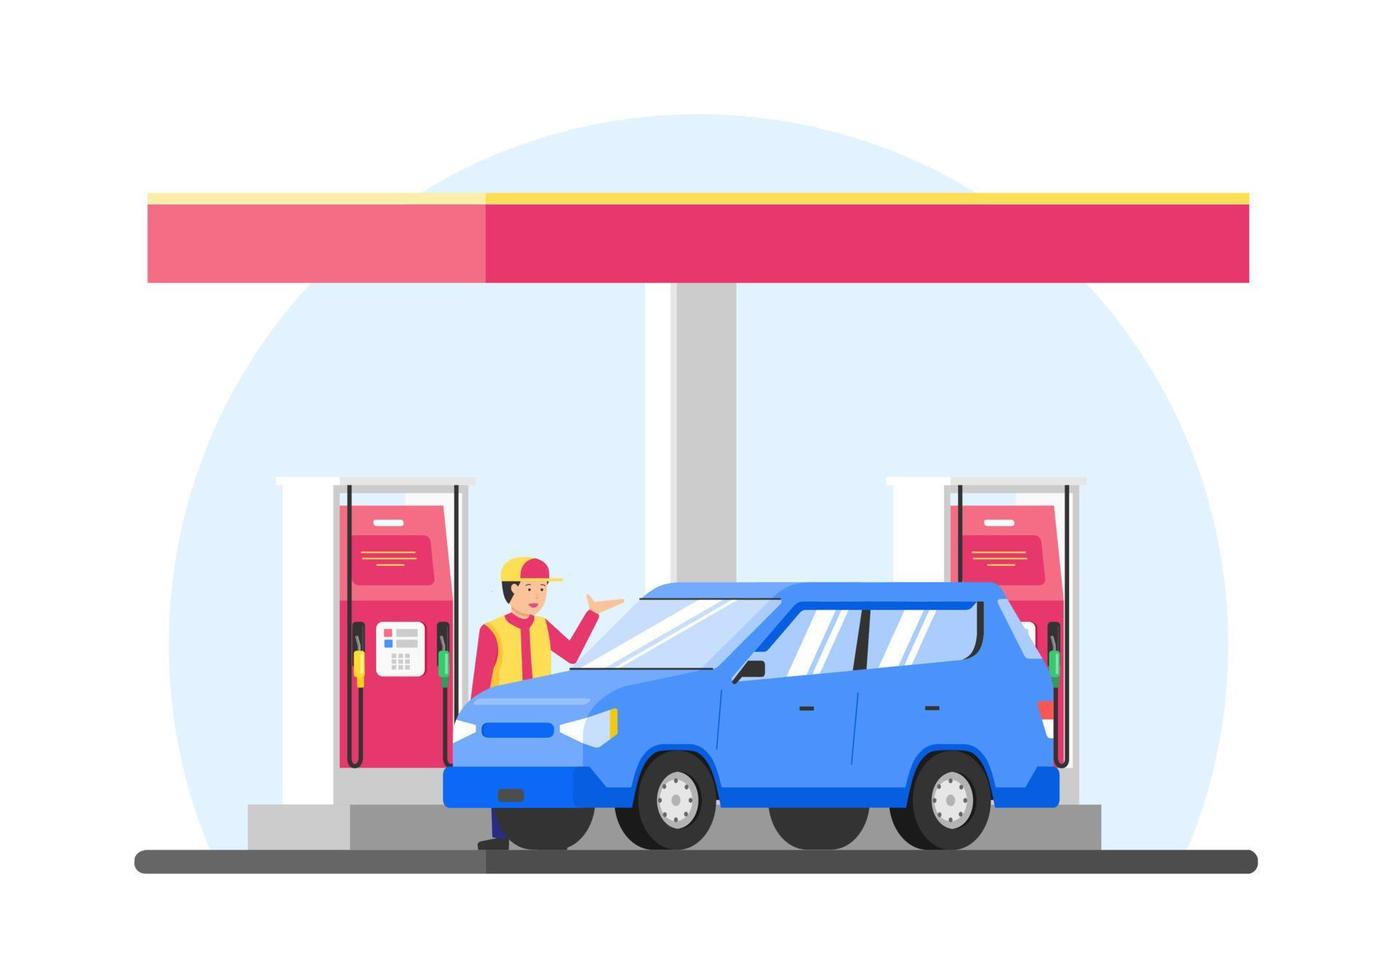 carro de reabastecimento de ilustração vetorial no posto de gasolina. reabastecer o carro azul com o tanque cheio com gasolina. vetor